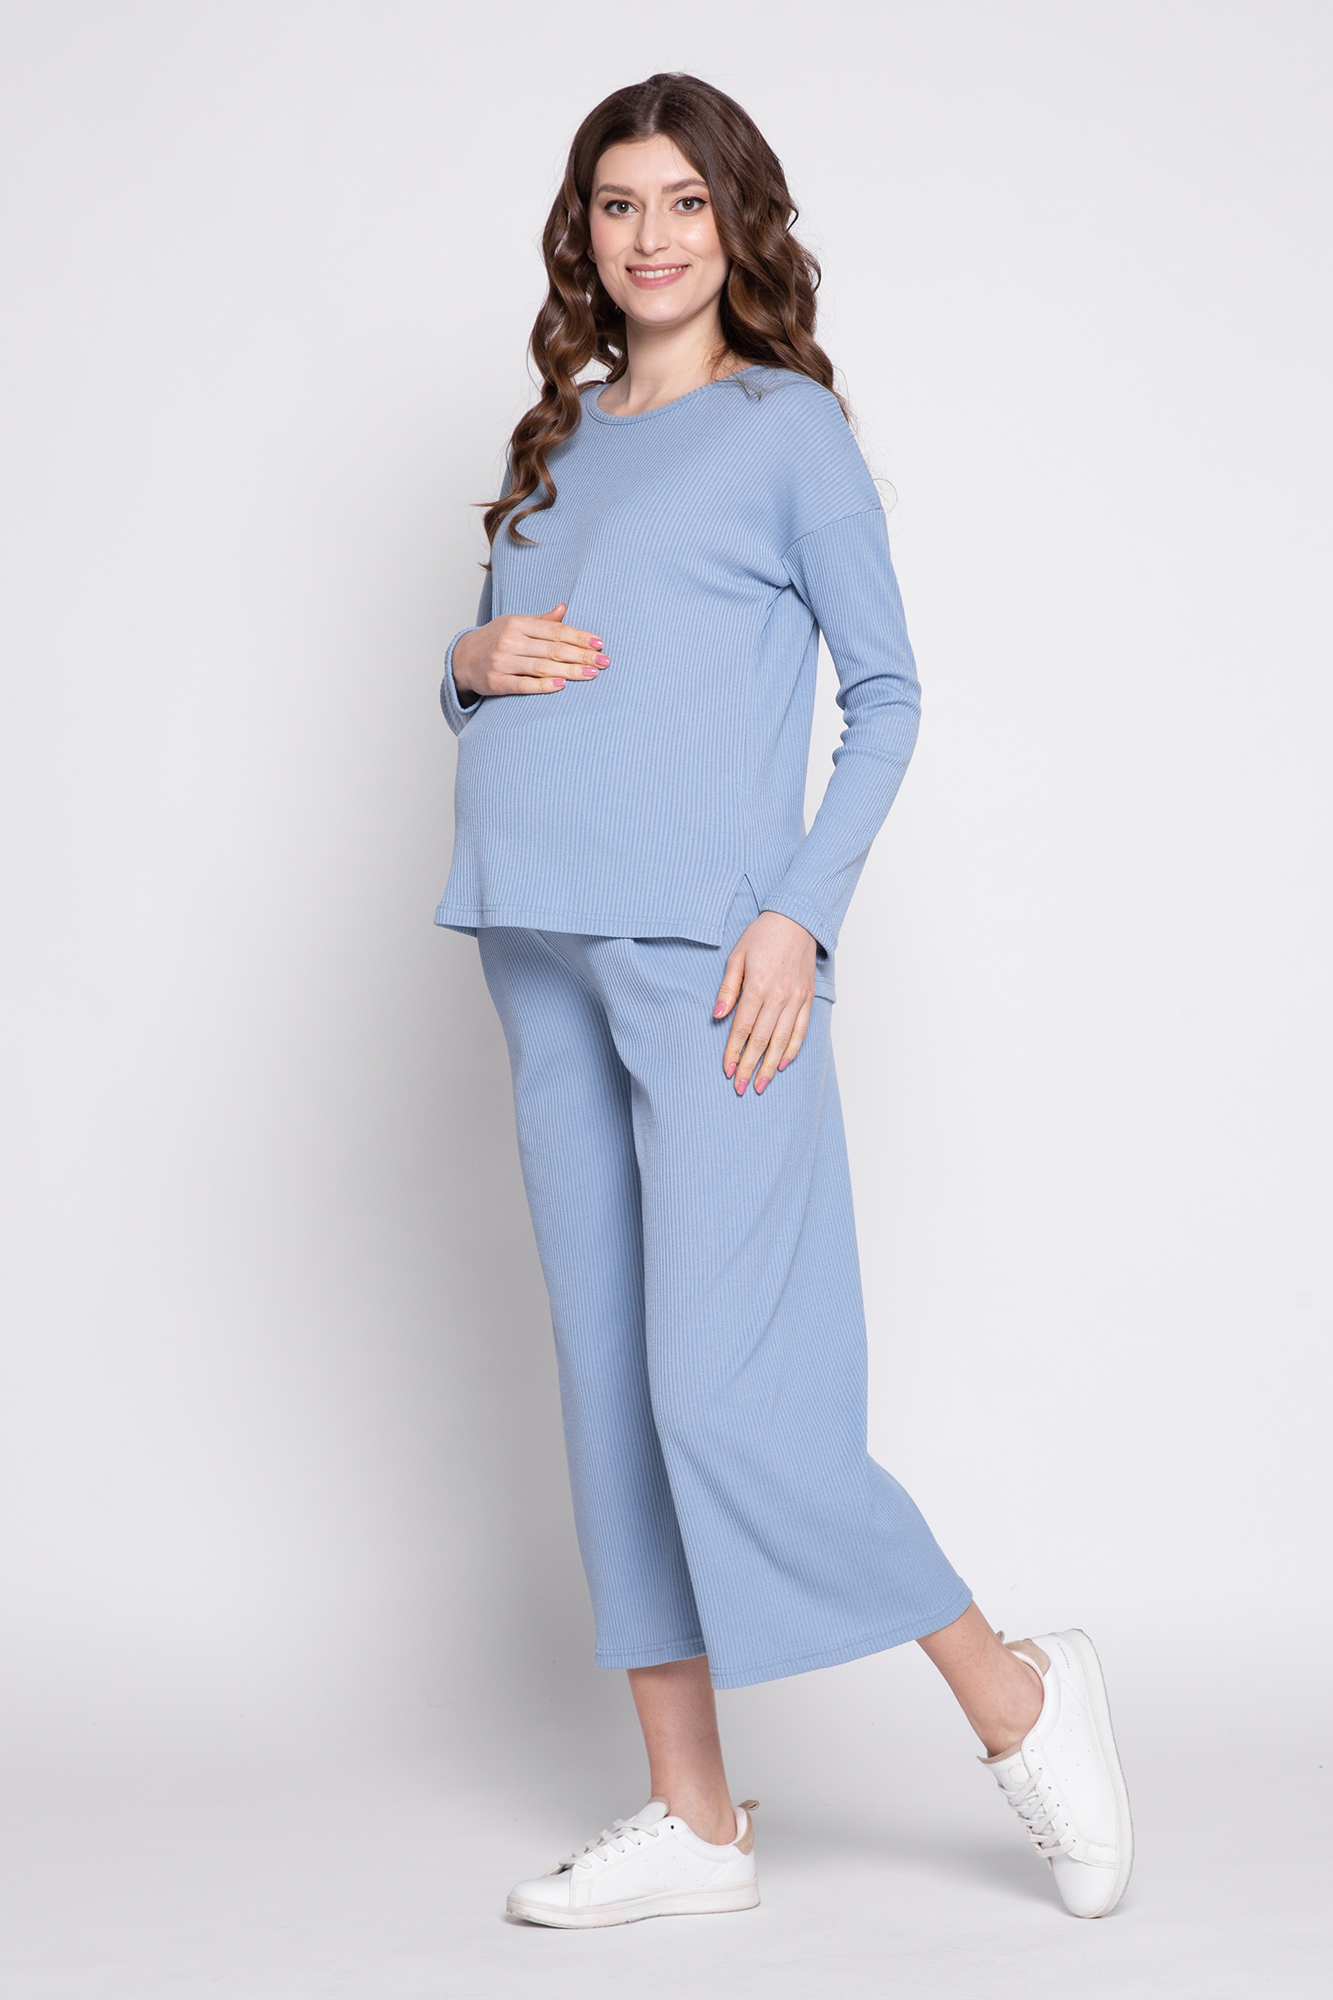 Костюм для беременных женский Magica bellezza 0184а голубой 52 RU